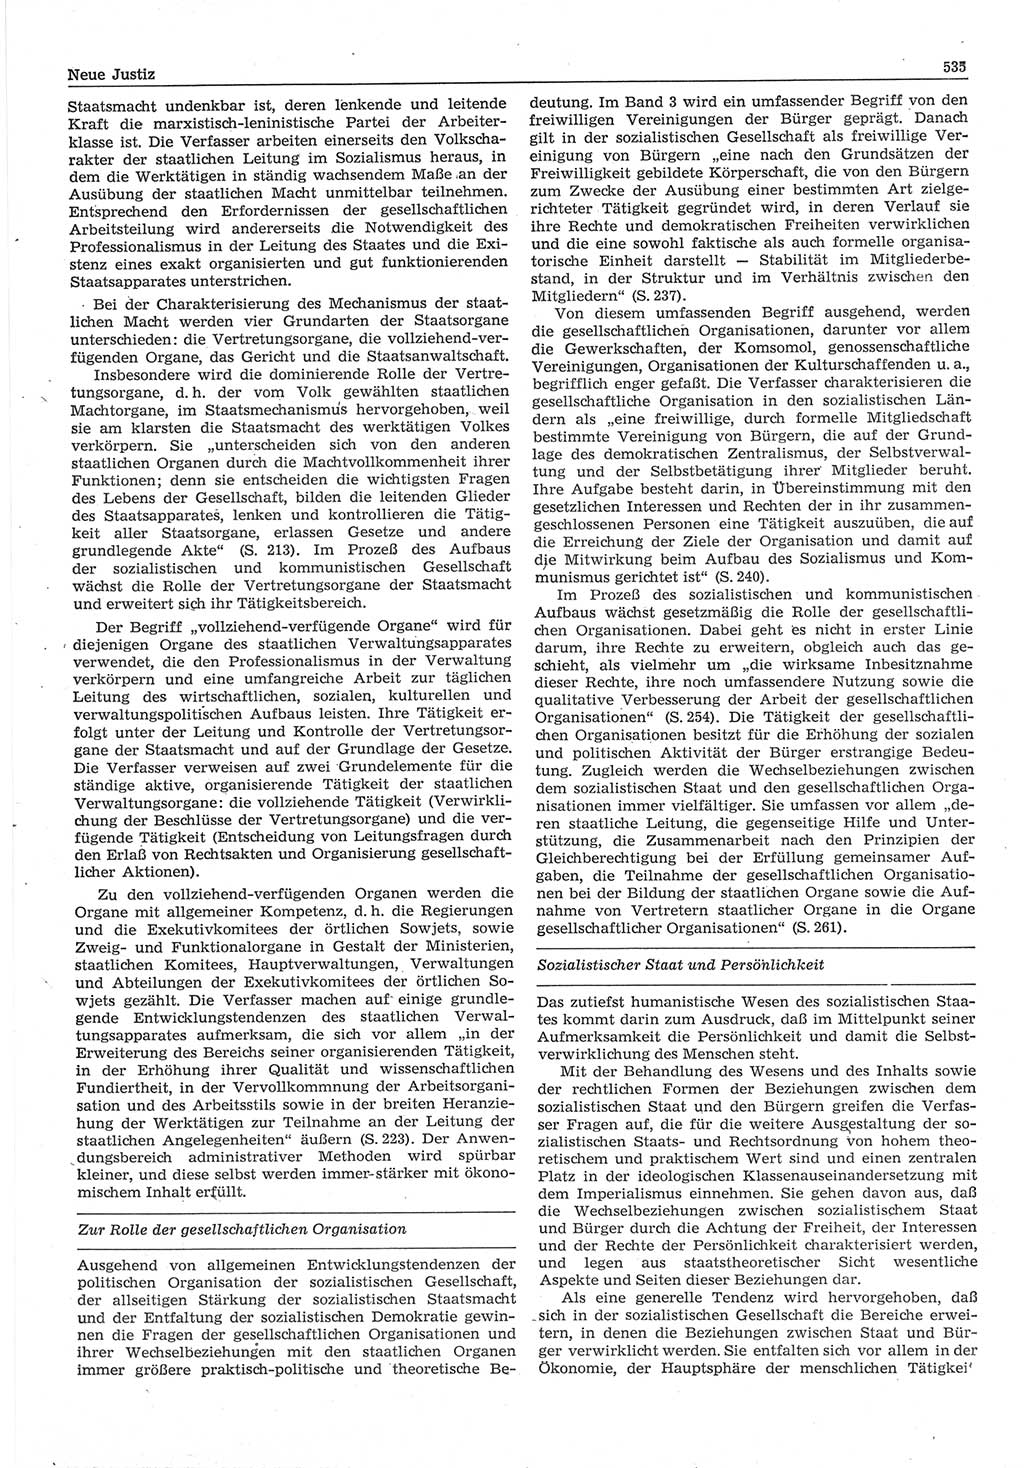 Neue Justiz (NJ), Zeitschrift für Recht und Rechtswissenschaft-Zeitschrift, sozialistisches Recht und Gesetzlichkeit, 31. Jahrgang 1977, Seite 535 (NJ DDR 1977, S. 535)